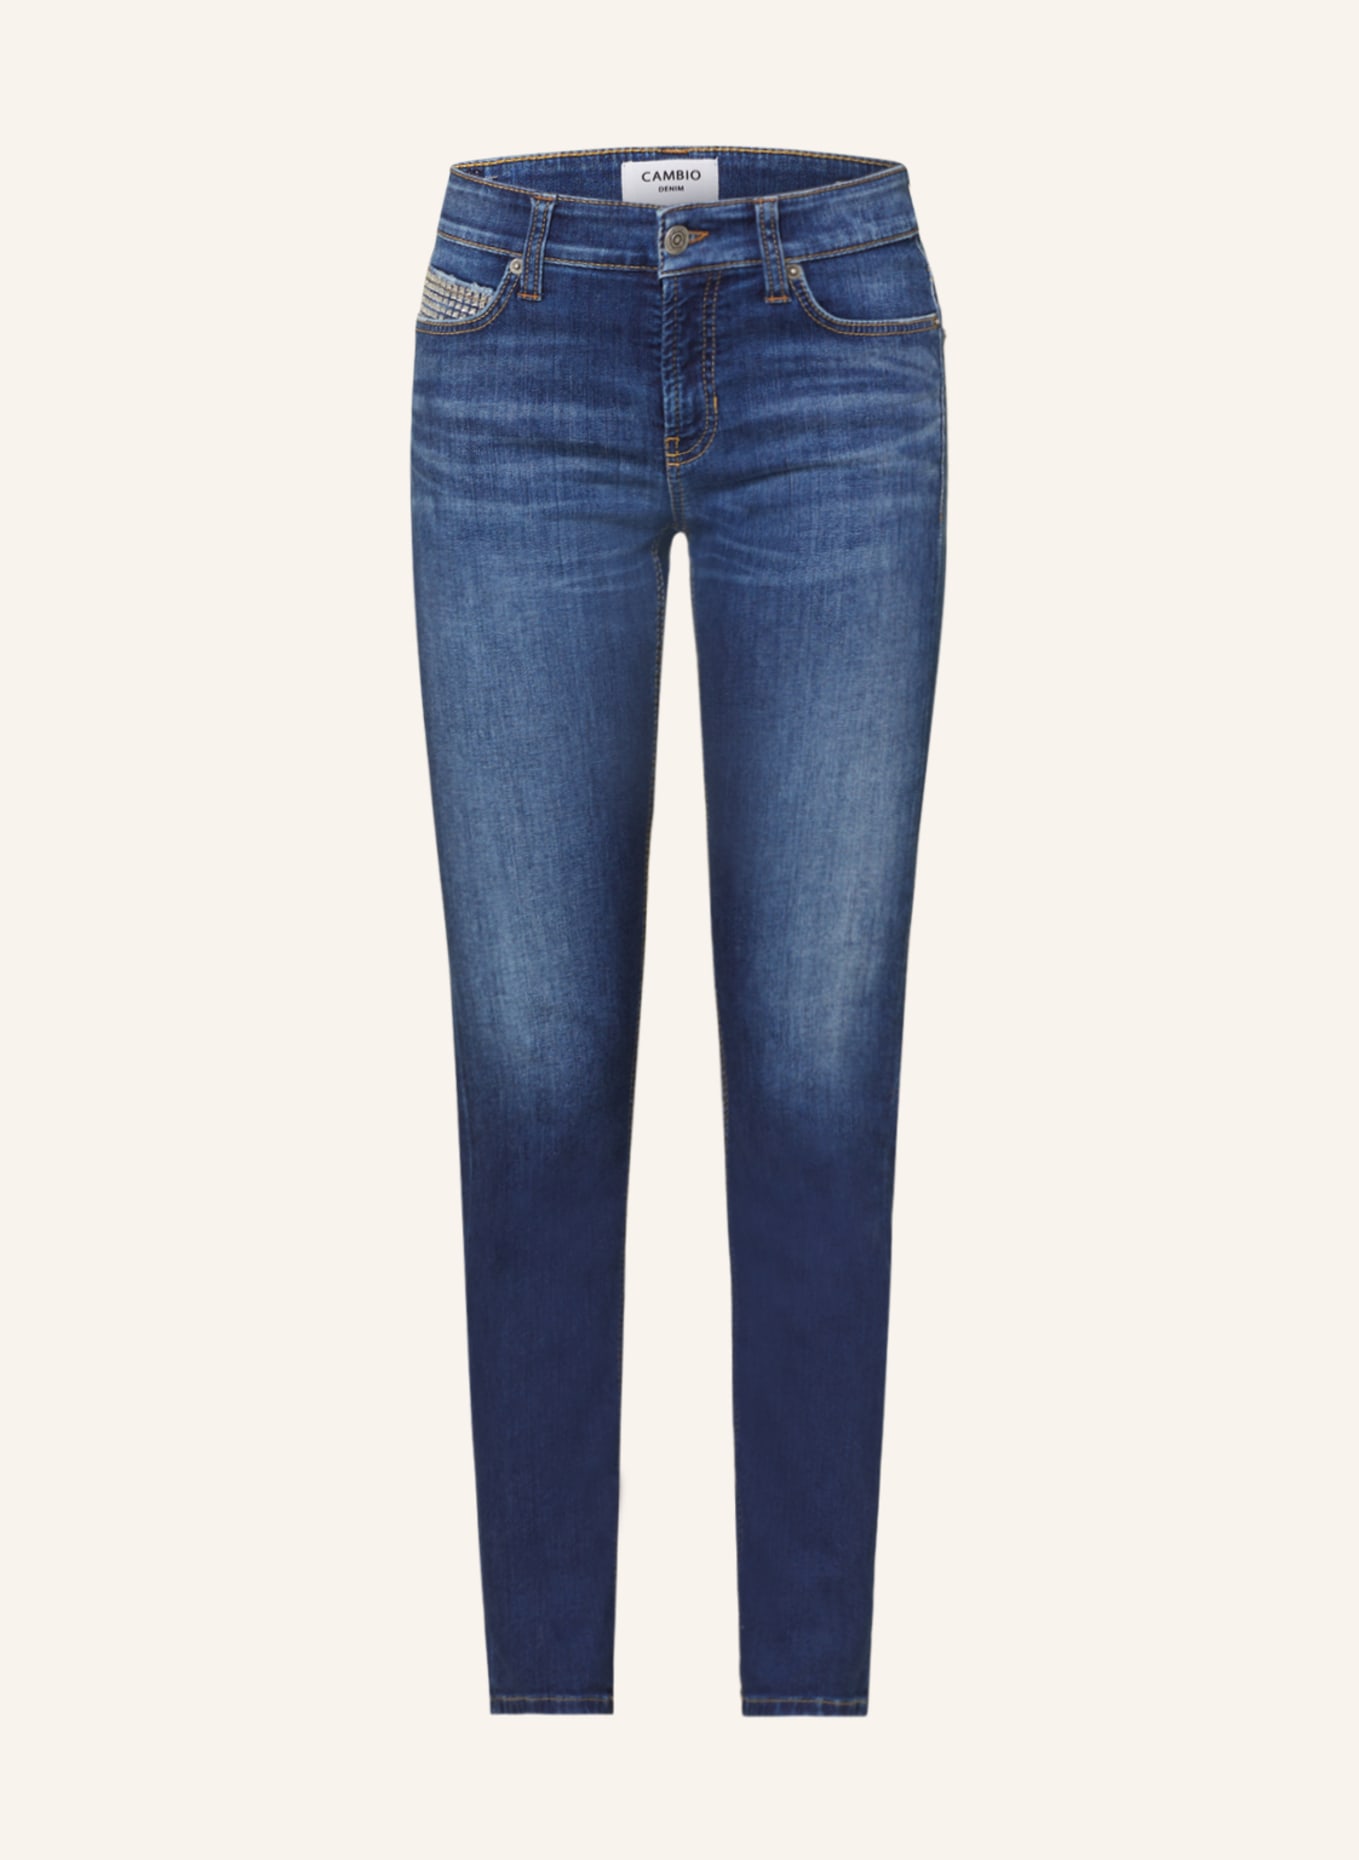 CAMBIO Skinny Jeans PARIS mit Schmucksteinen, Farbe: 5061 medium contrast splinted (Bild 1)